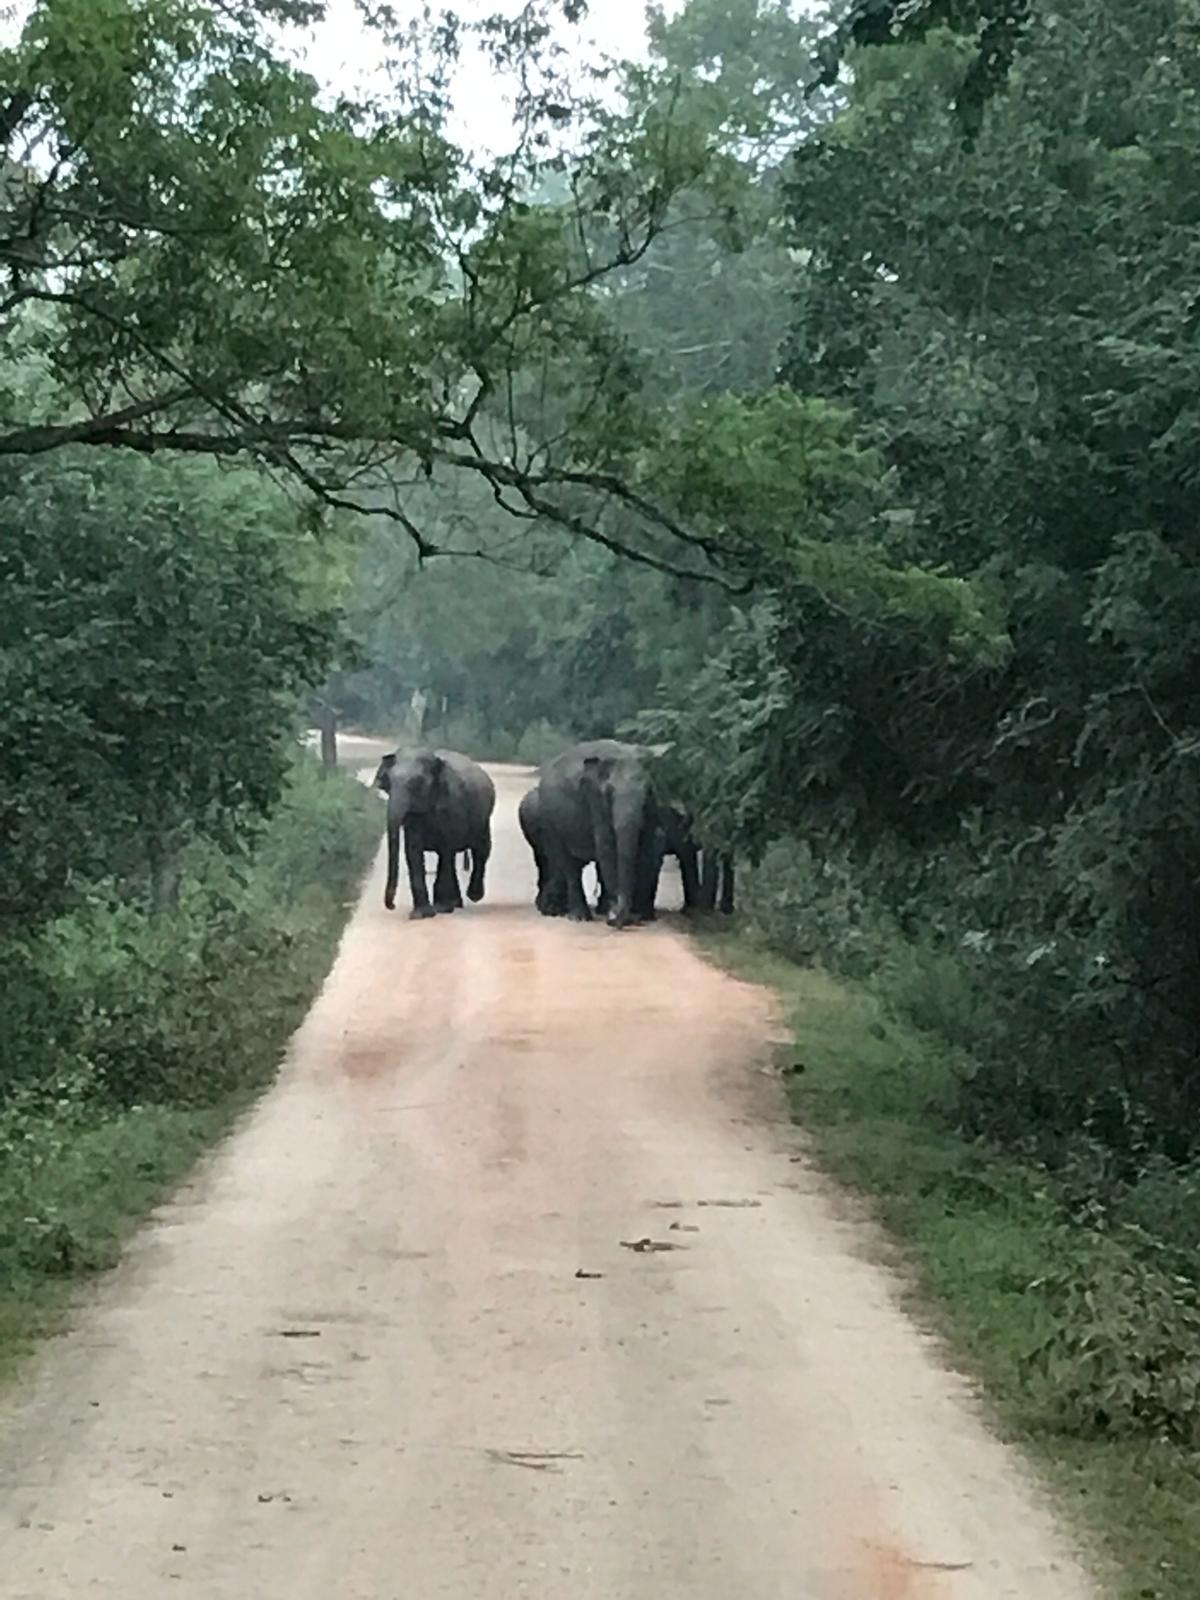 Elefantes cortando el camino.